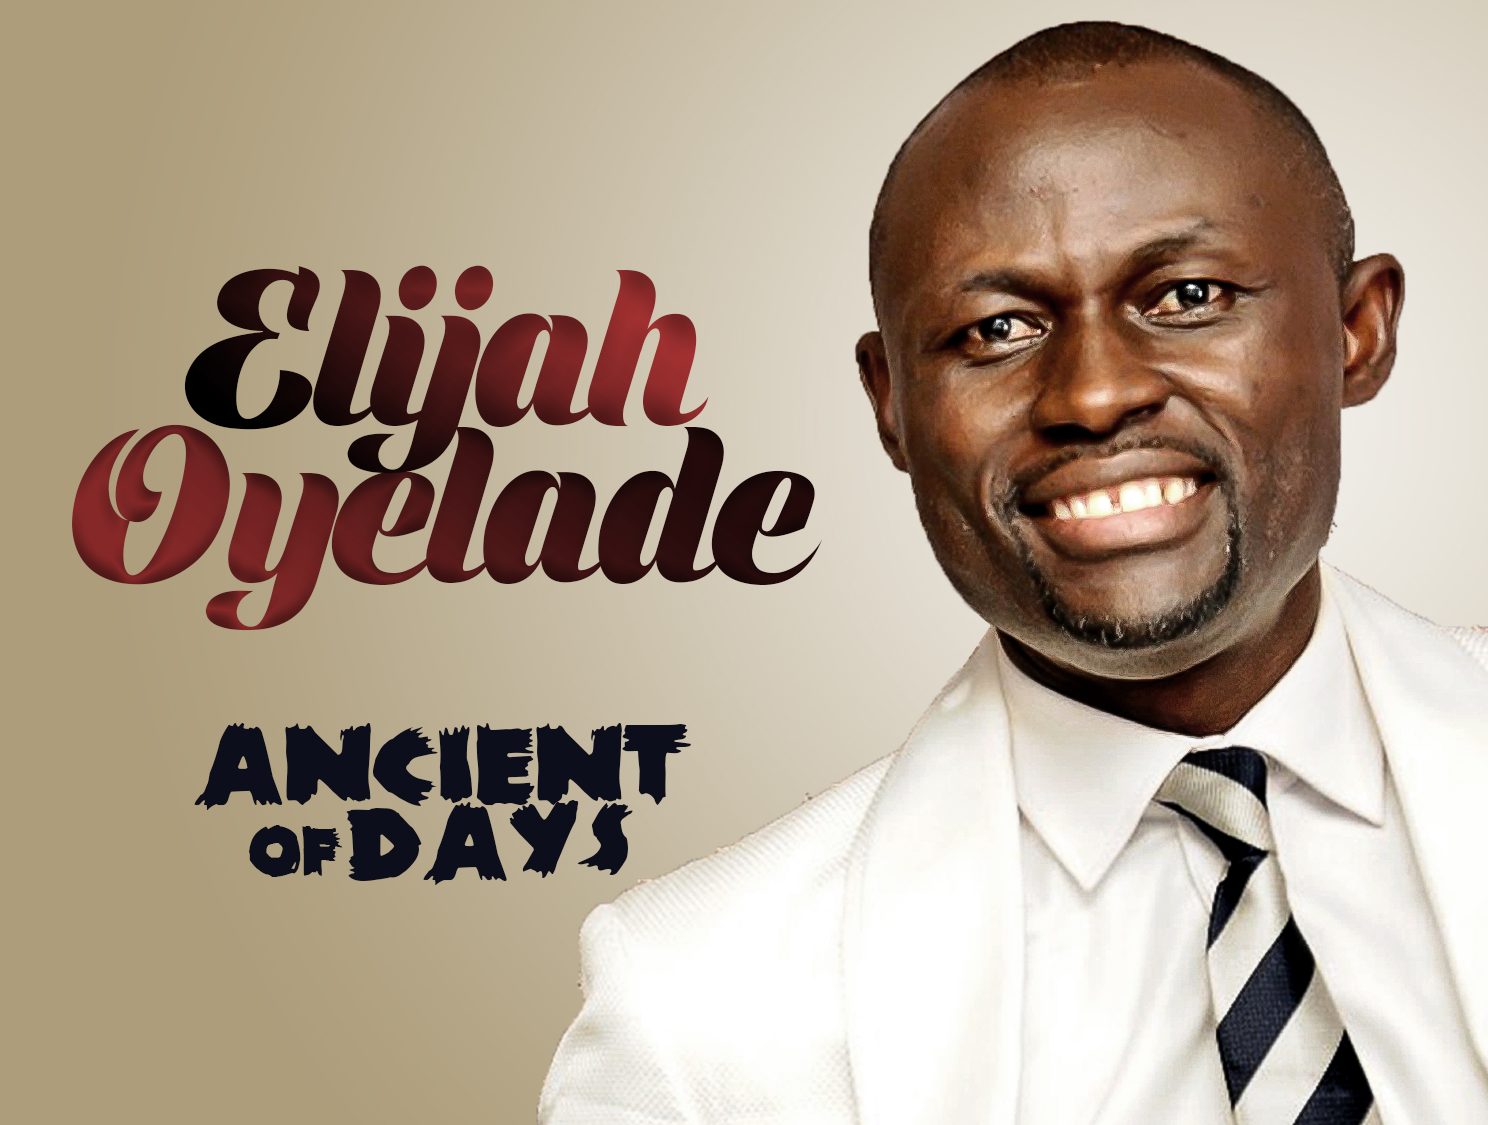 Elijah Oyelade